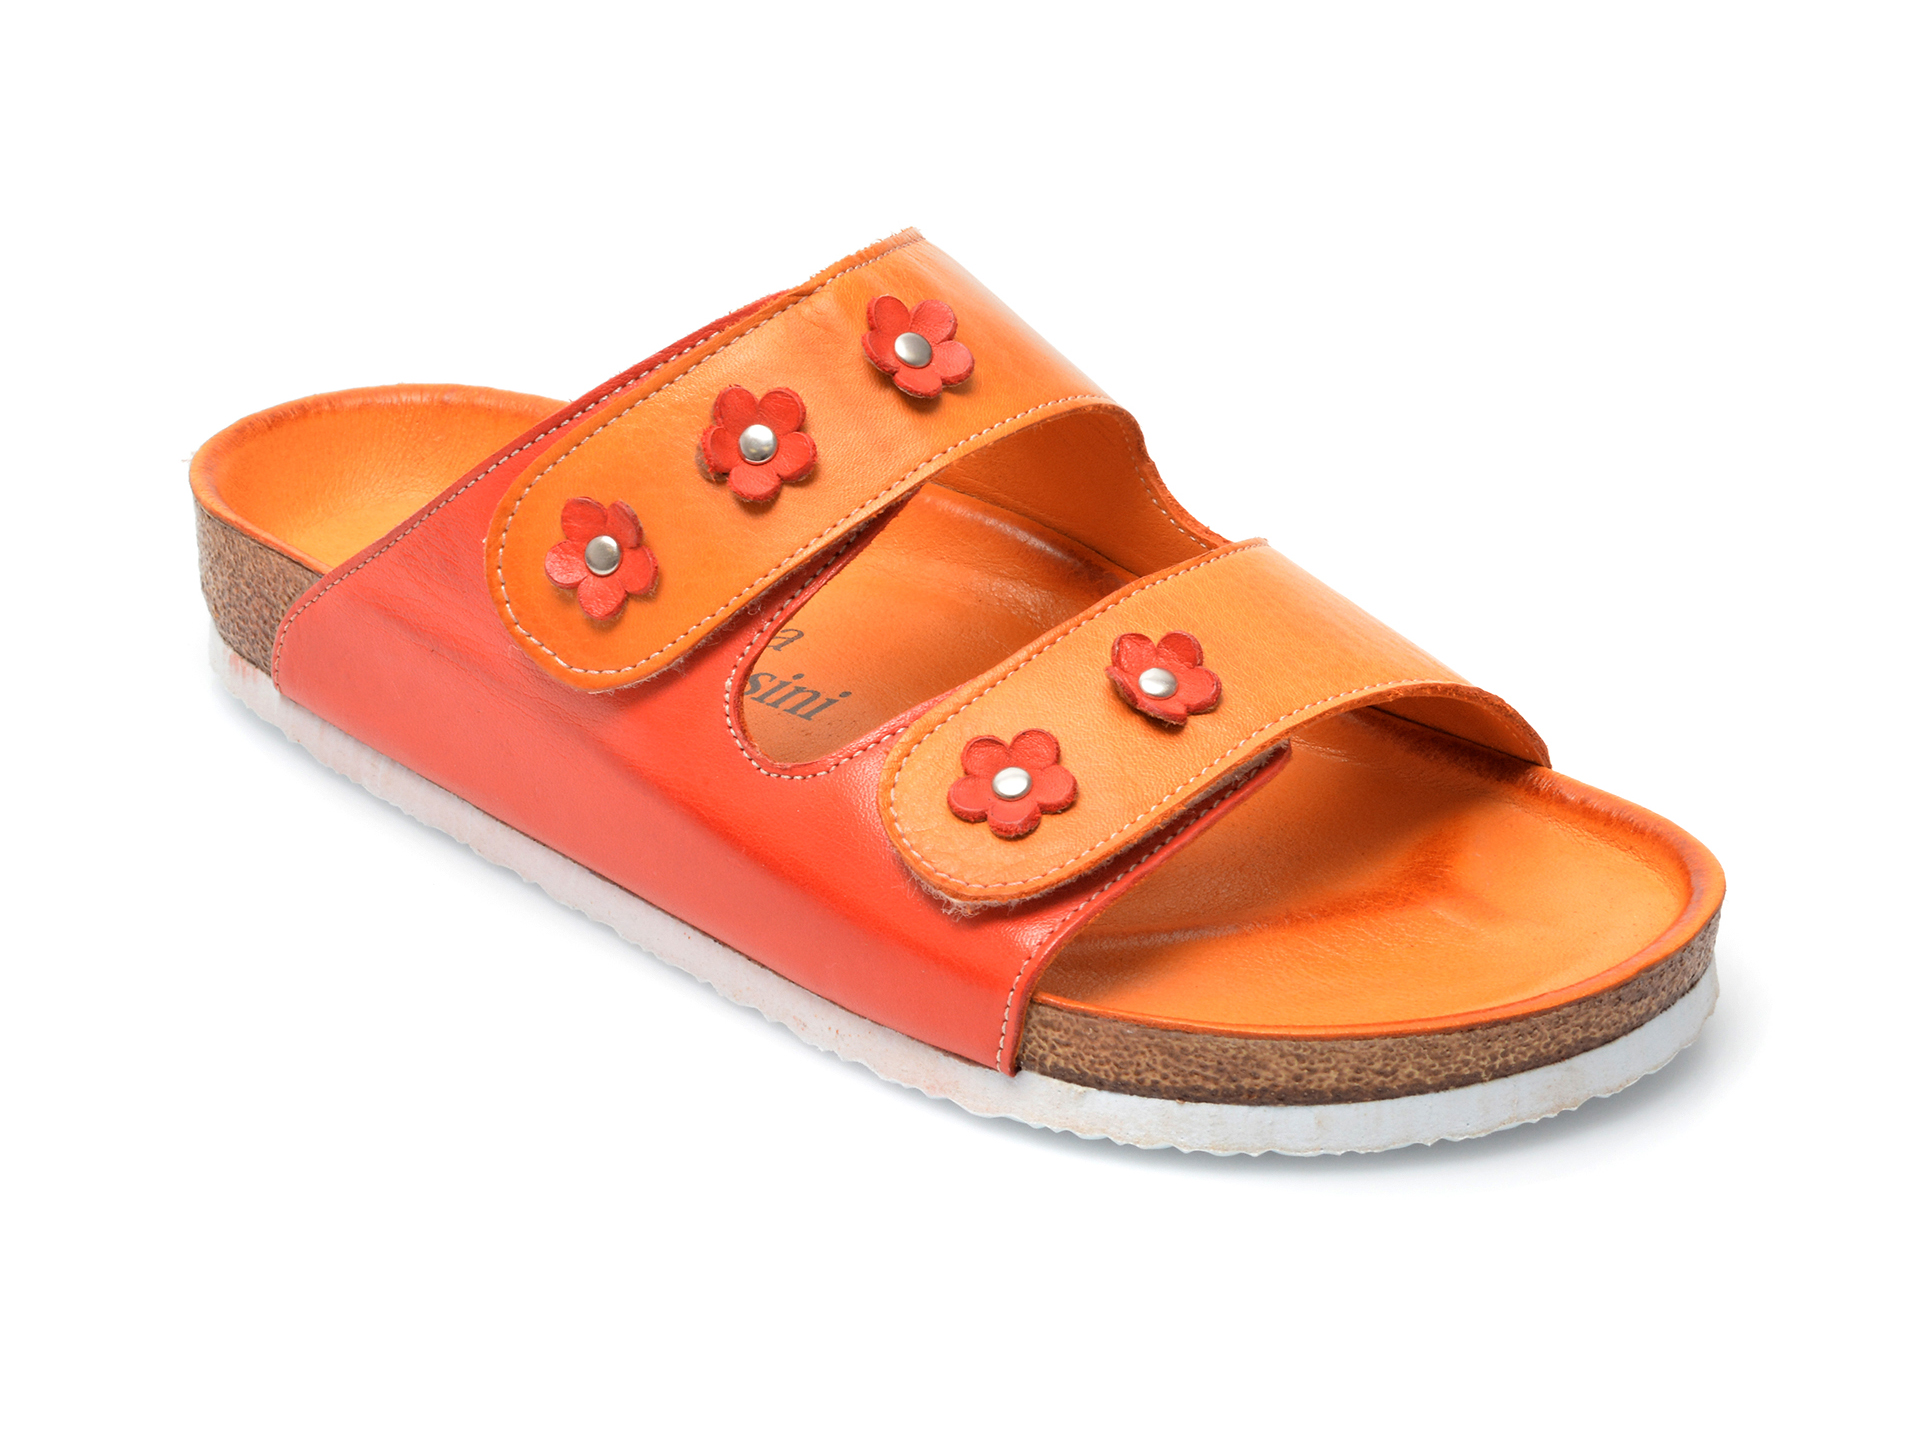 Papuci FLAVIA PASSINI portocalii, 2117, din piele naturala imagine Black Friday 2021